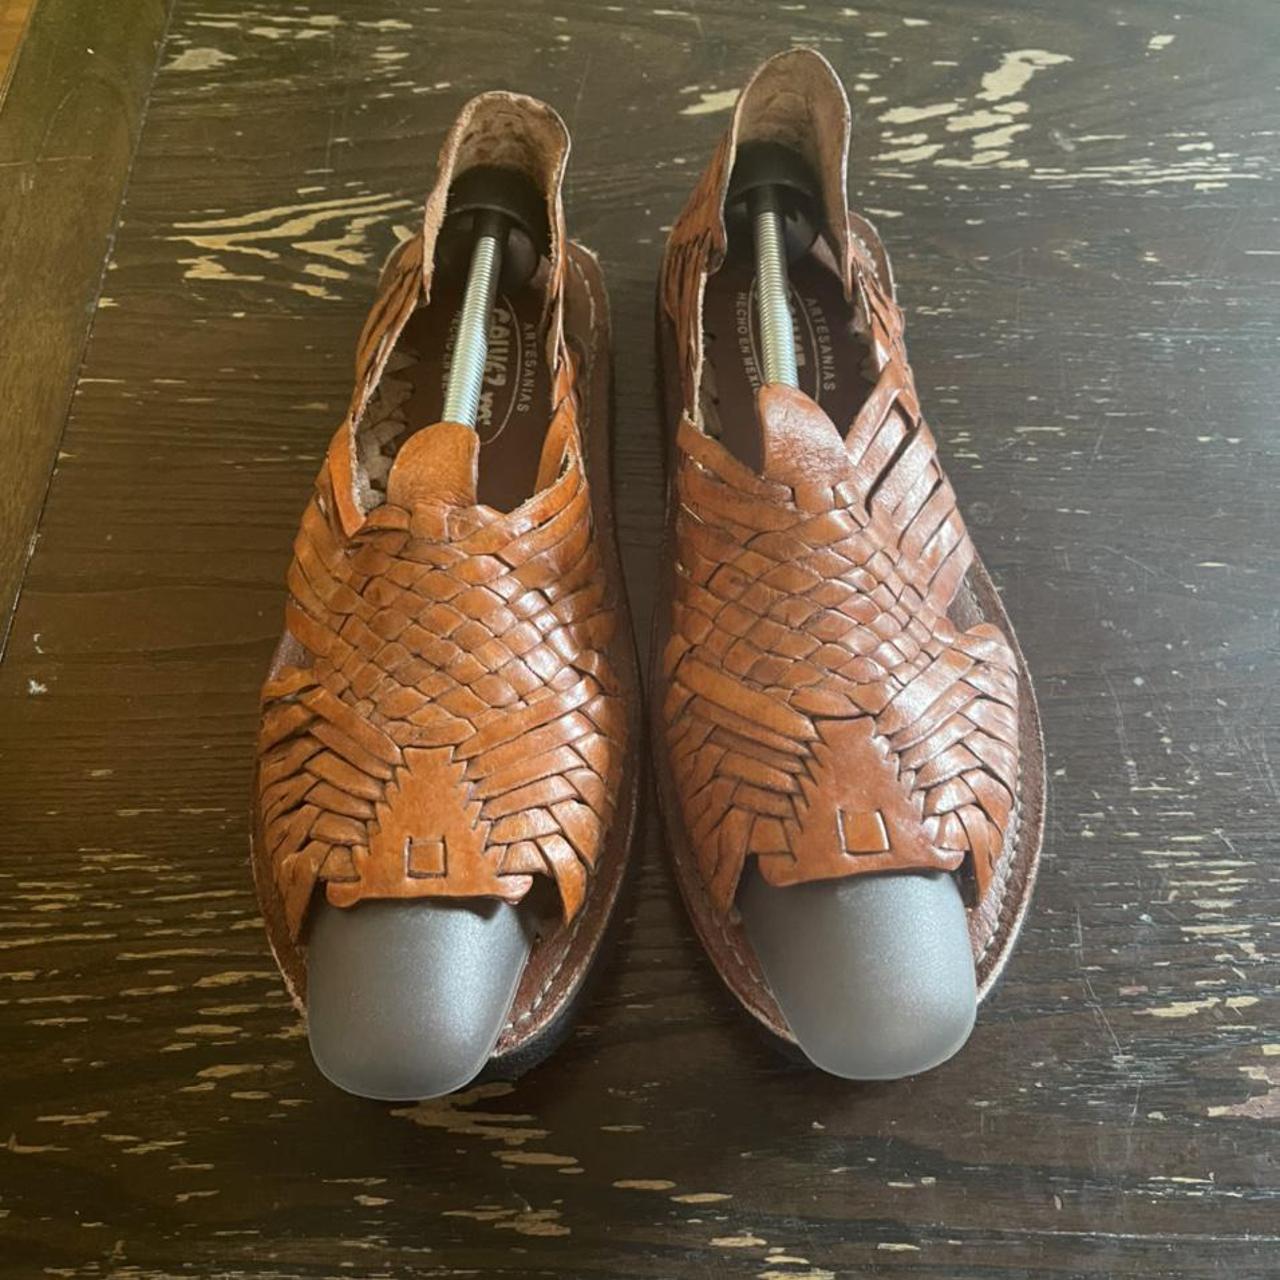 Product Image 1 - Galvez leather sun shoes sandals.